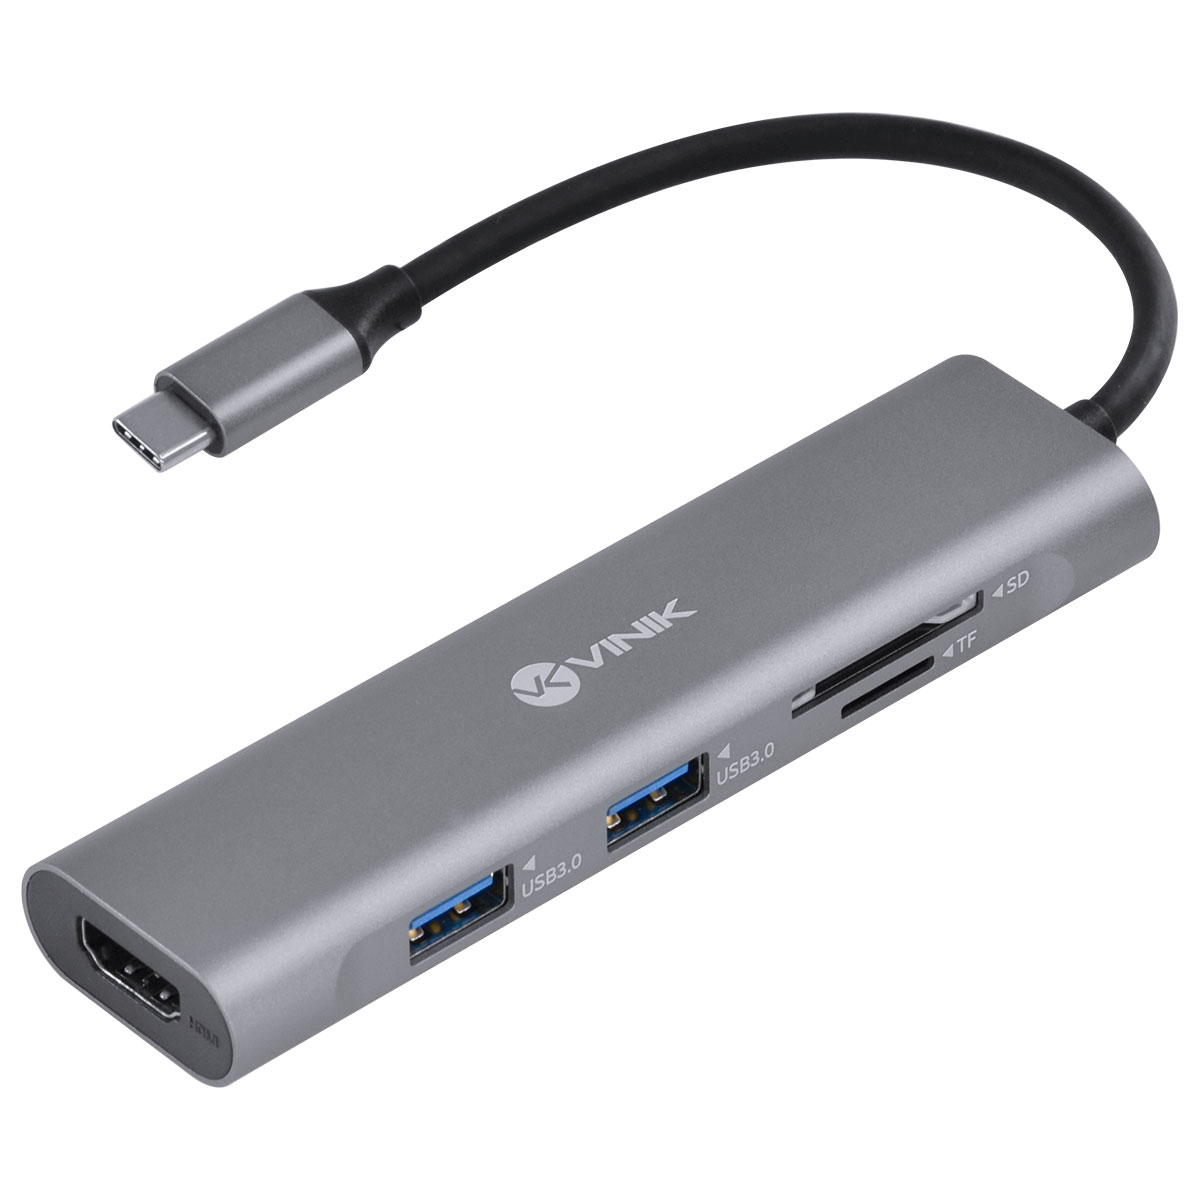 Hub com 2 entradas USB 3.0, 1 entrada USB cartão SD, 1 entrada para cartão TF e uma entrada HDMI 4K. Apresenta conexão USB Tipo C e é na cor cinza metalizado.